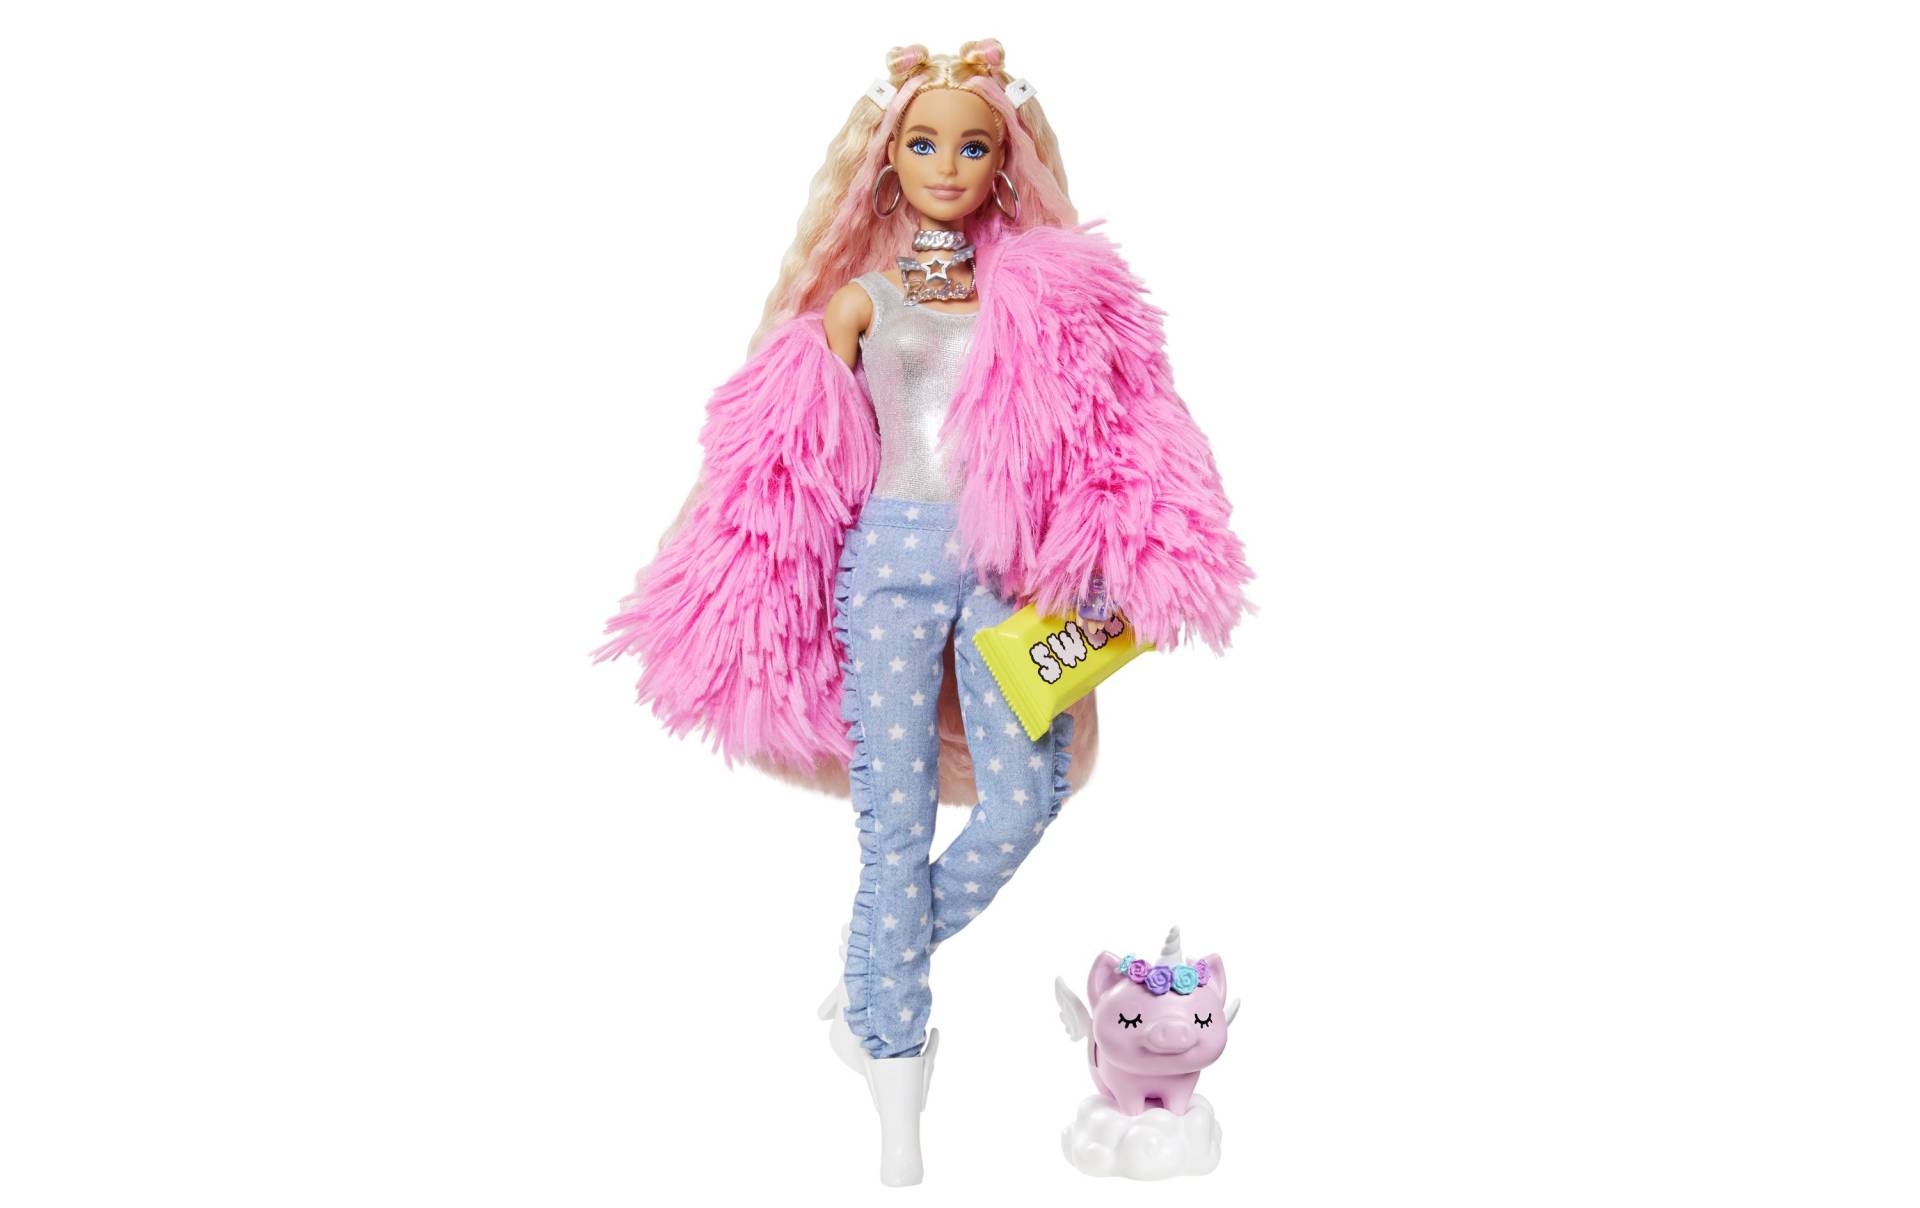 Barbie Spielfigur »Extra mit flauschiger rosa Jacke« von Barbie